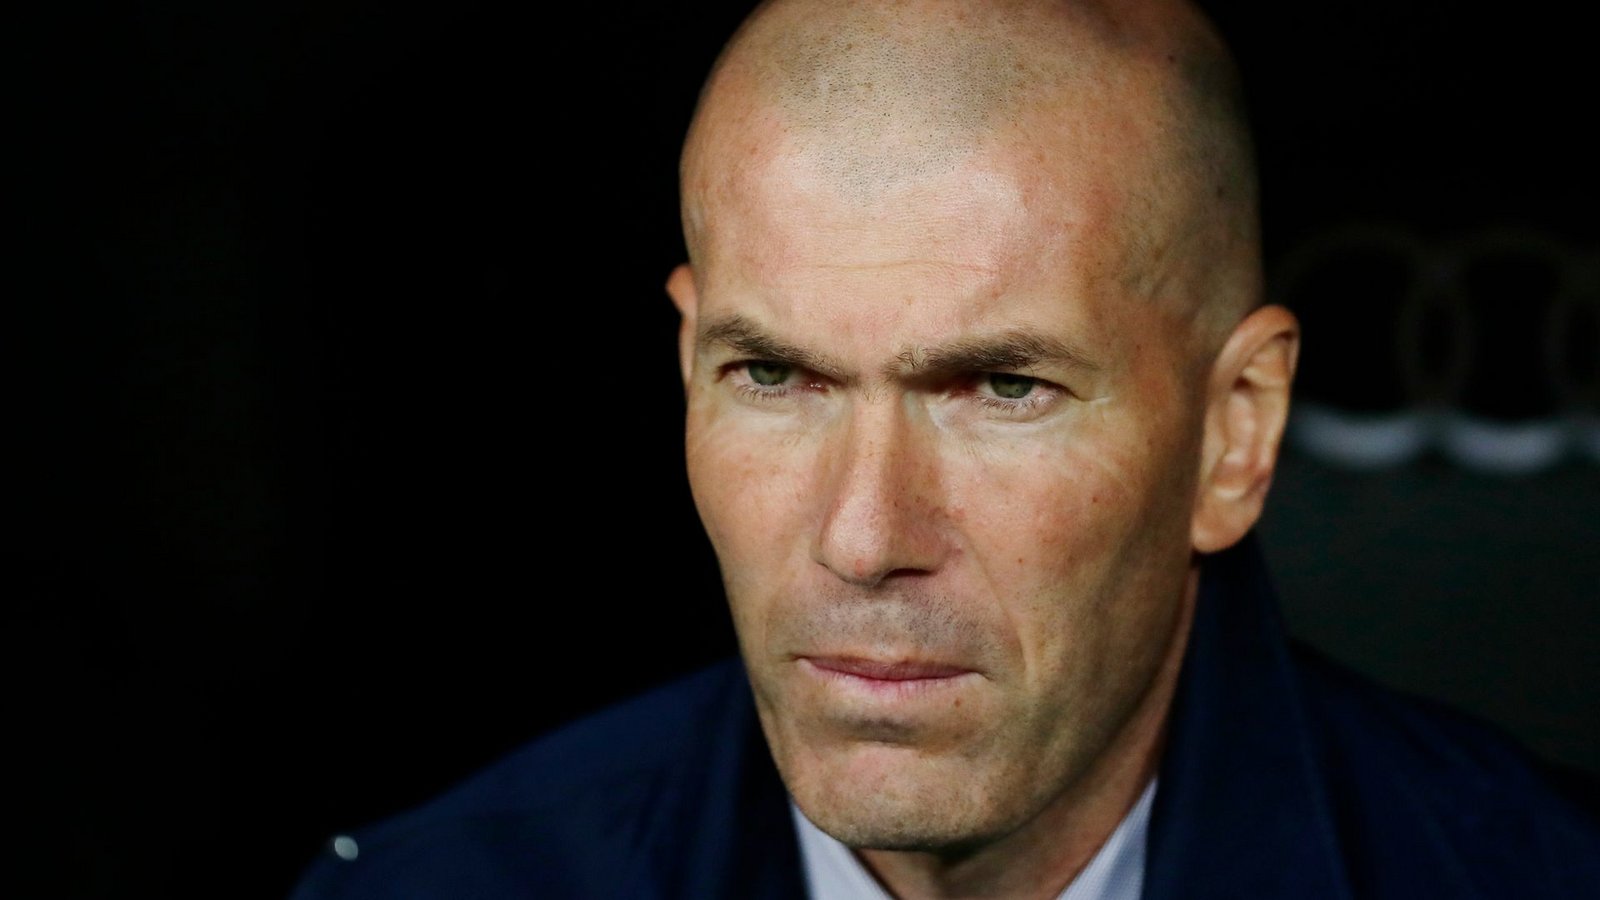 Die französische Fußball-Legende Zinédine Zidane könnte Cheftrainer beim FC Bayern werden.Foto: Manu Fernandez/AP/dpa